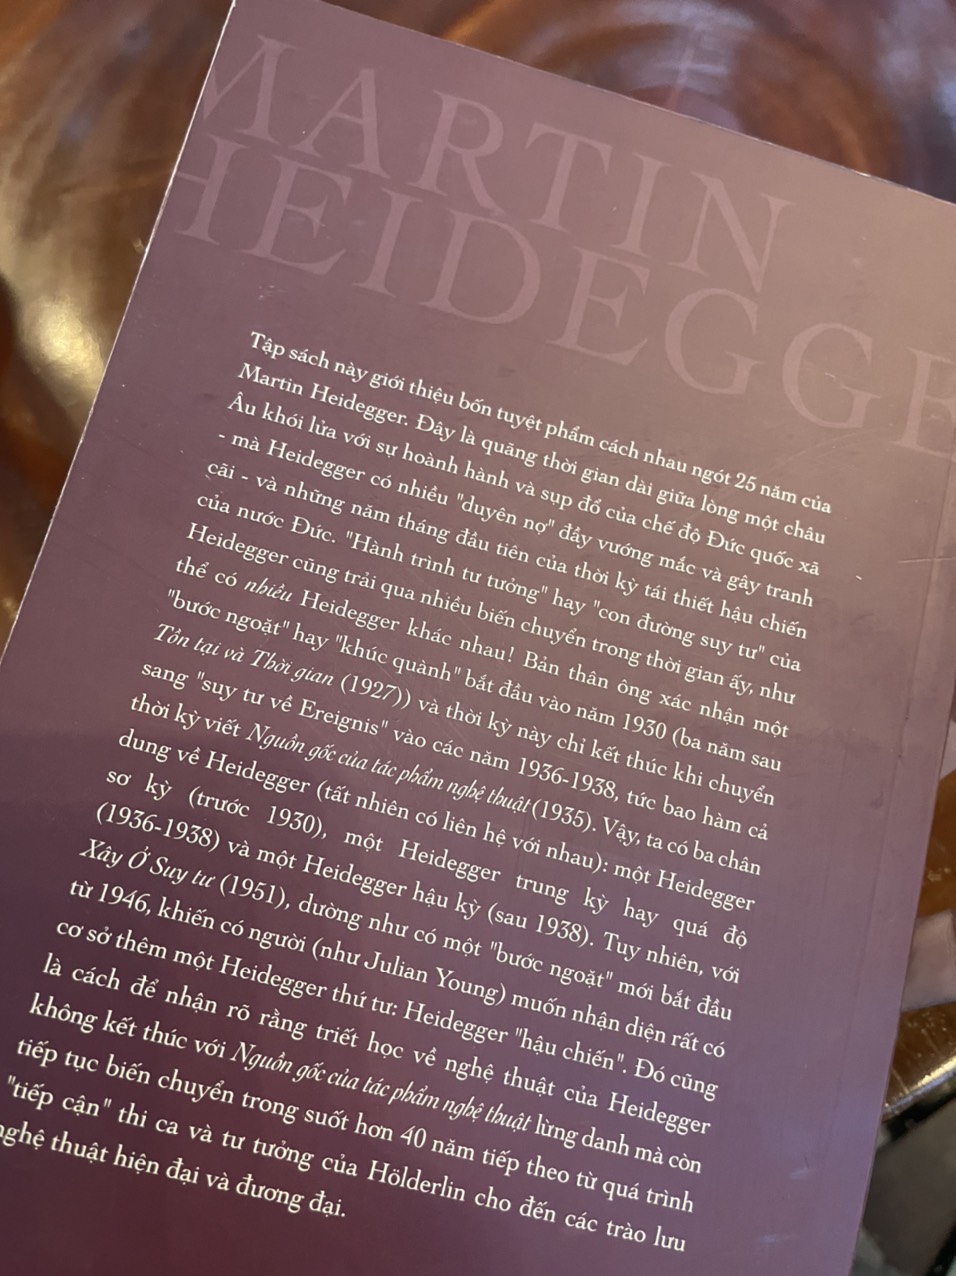 MARTIN HEIDEGGER - VẬT, XÂY Ở SUY TƯ, NGUỒN GỐC CỦA TÁC PHẨM NGHỆ THUẬT, TỒN TẠI VÀ THỜI GIAN - – Martin Heidegger - Bùi Văn Nam Sơn dịch - TrustBooks - NXB Hồng Đức (bìa mềm)